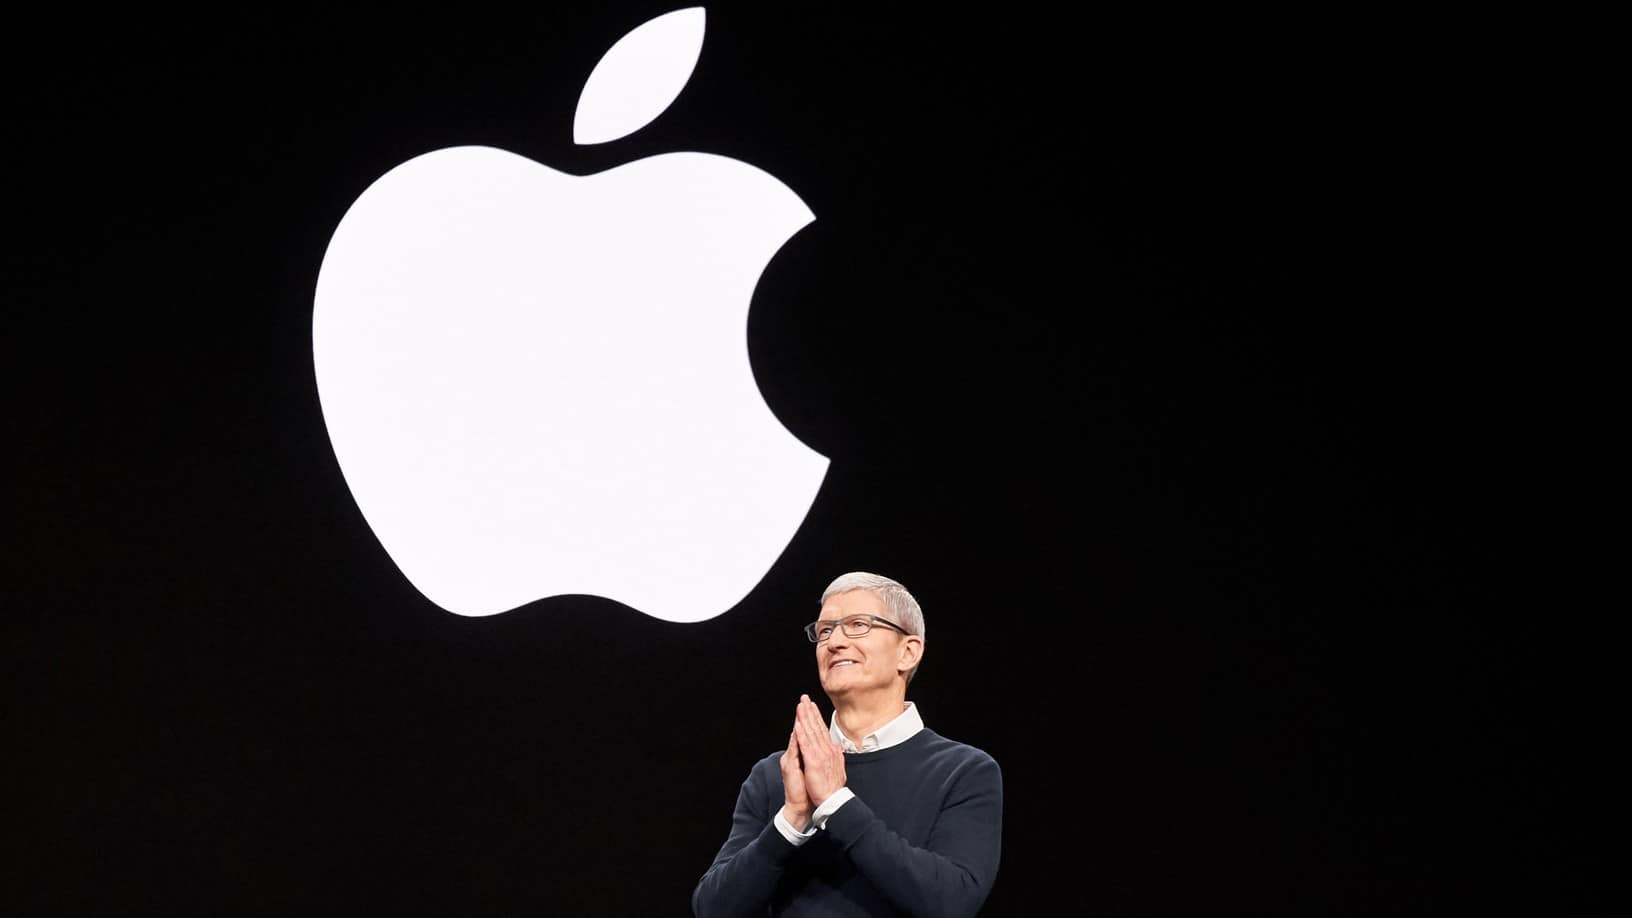 Apple hit a market cap of $2 trillion